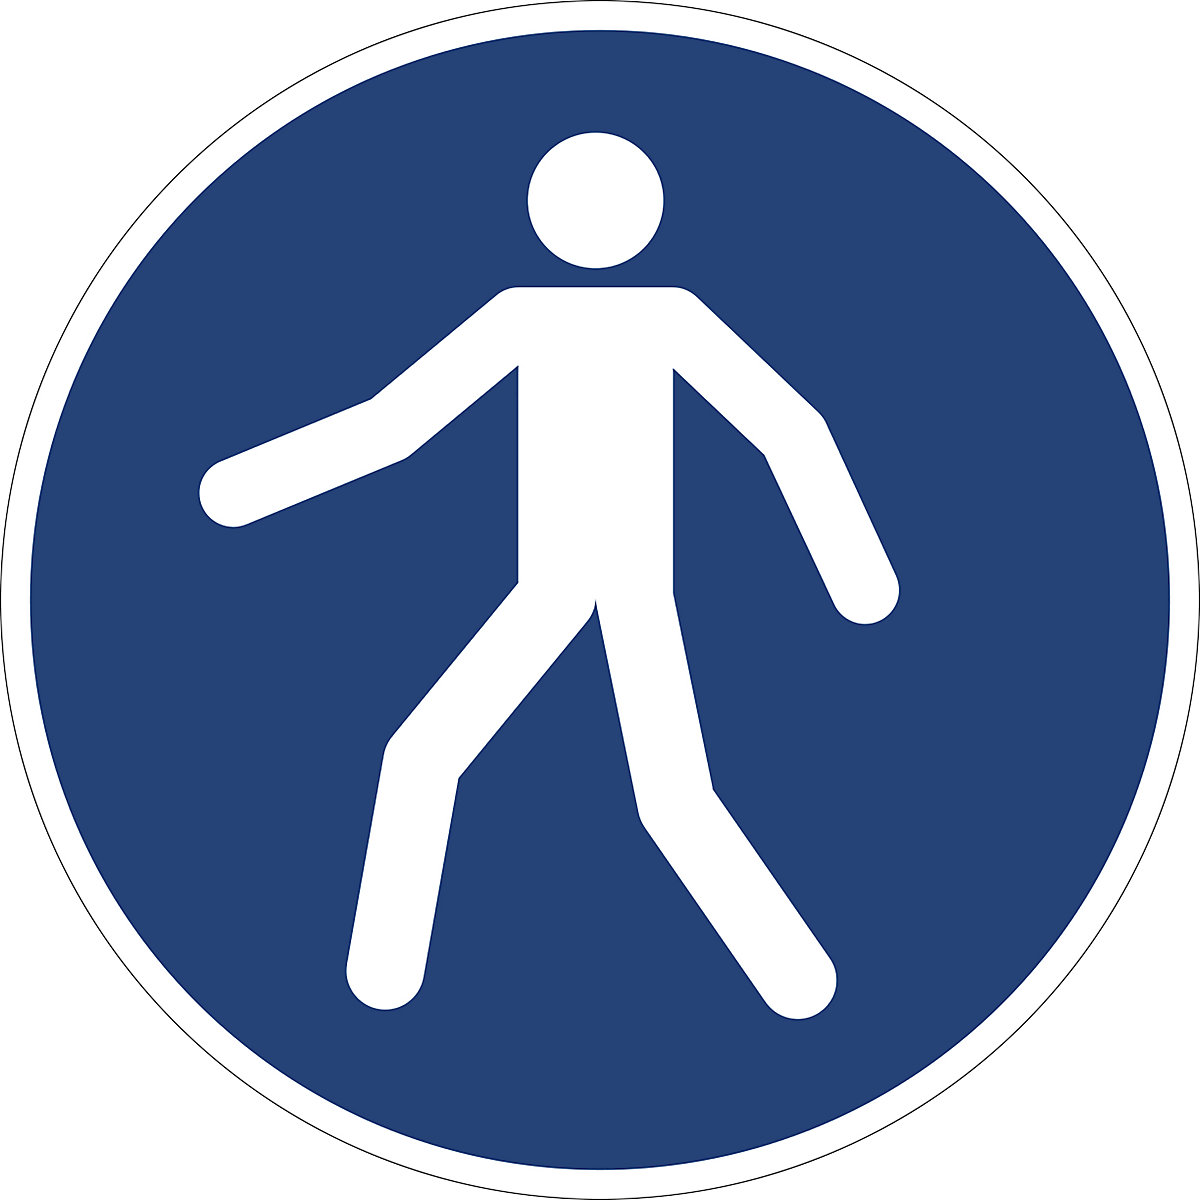 Príkazové označenie, používať chodník pre chodcov, OJ 10 ks, fólia, Ø 200 mm-3